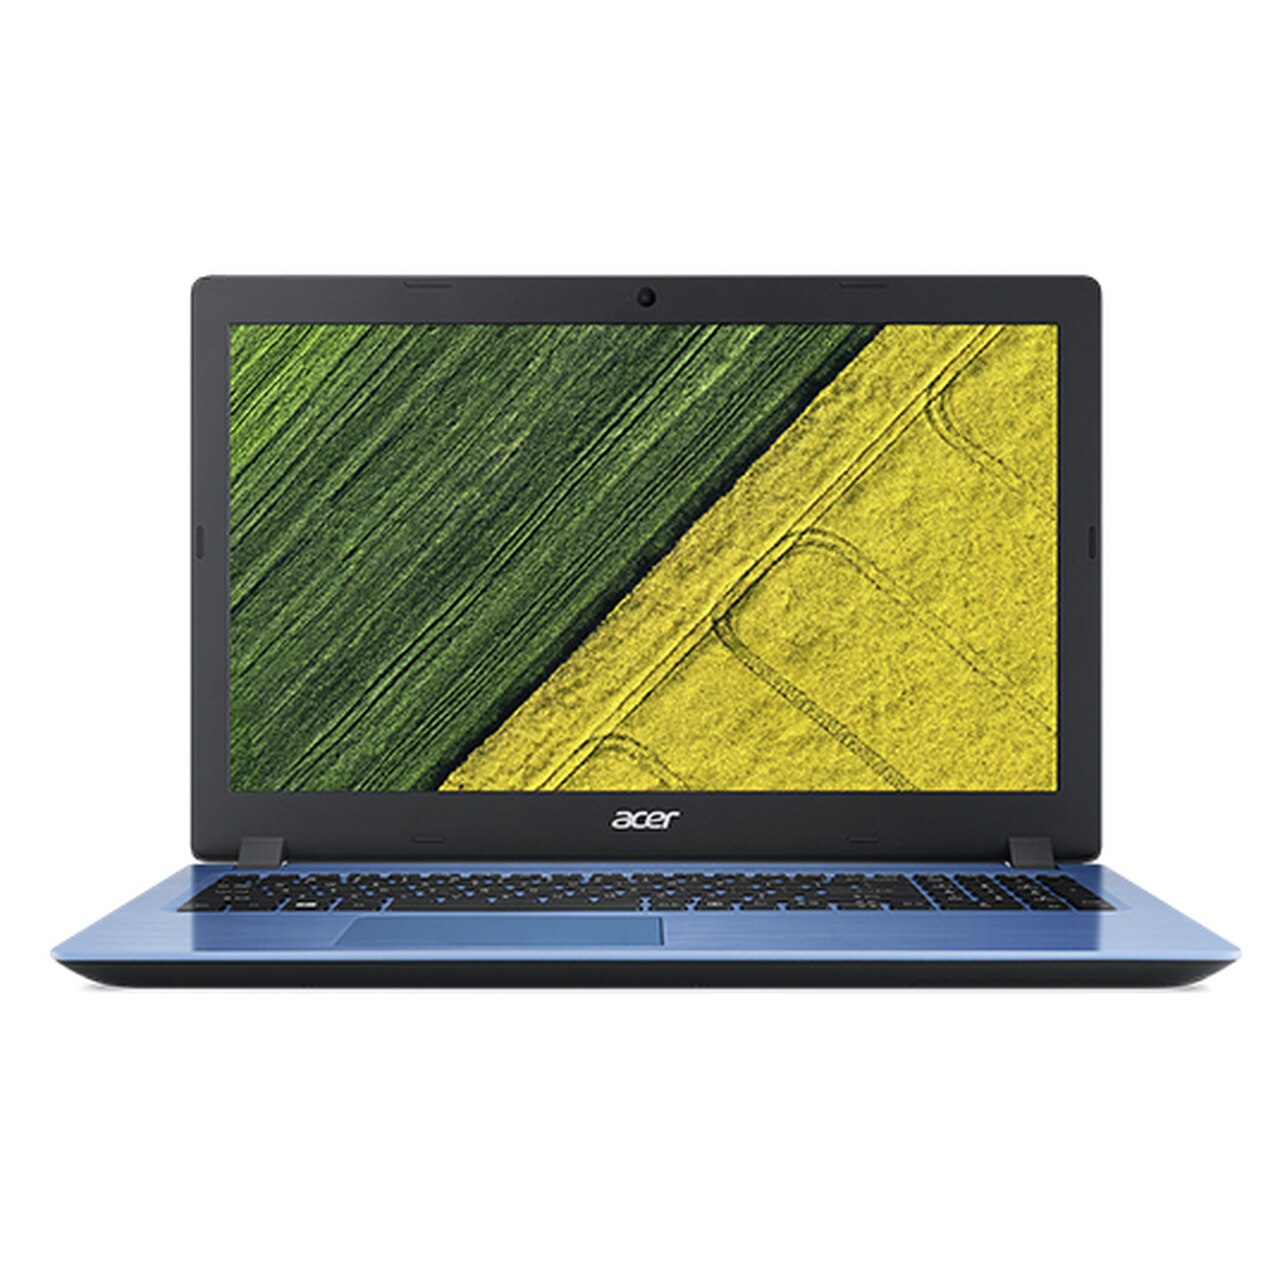 Acer Aspire 3 - A315-53-32TF 15.6 inch Laptop i3-8130U 4GB 16GB 1TB HDD W10H, Indigo Blue - image 3 of 3